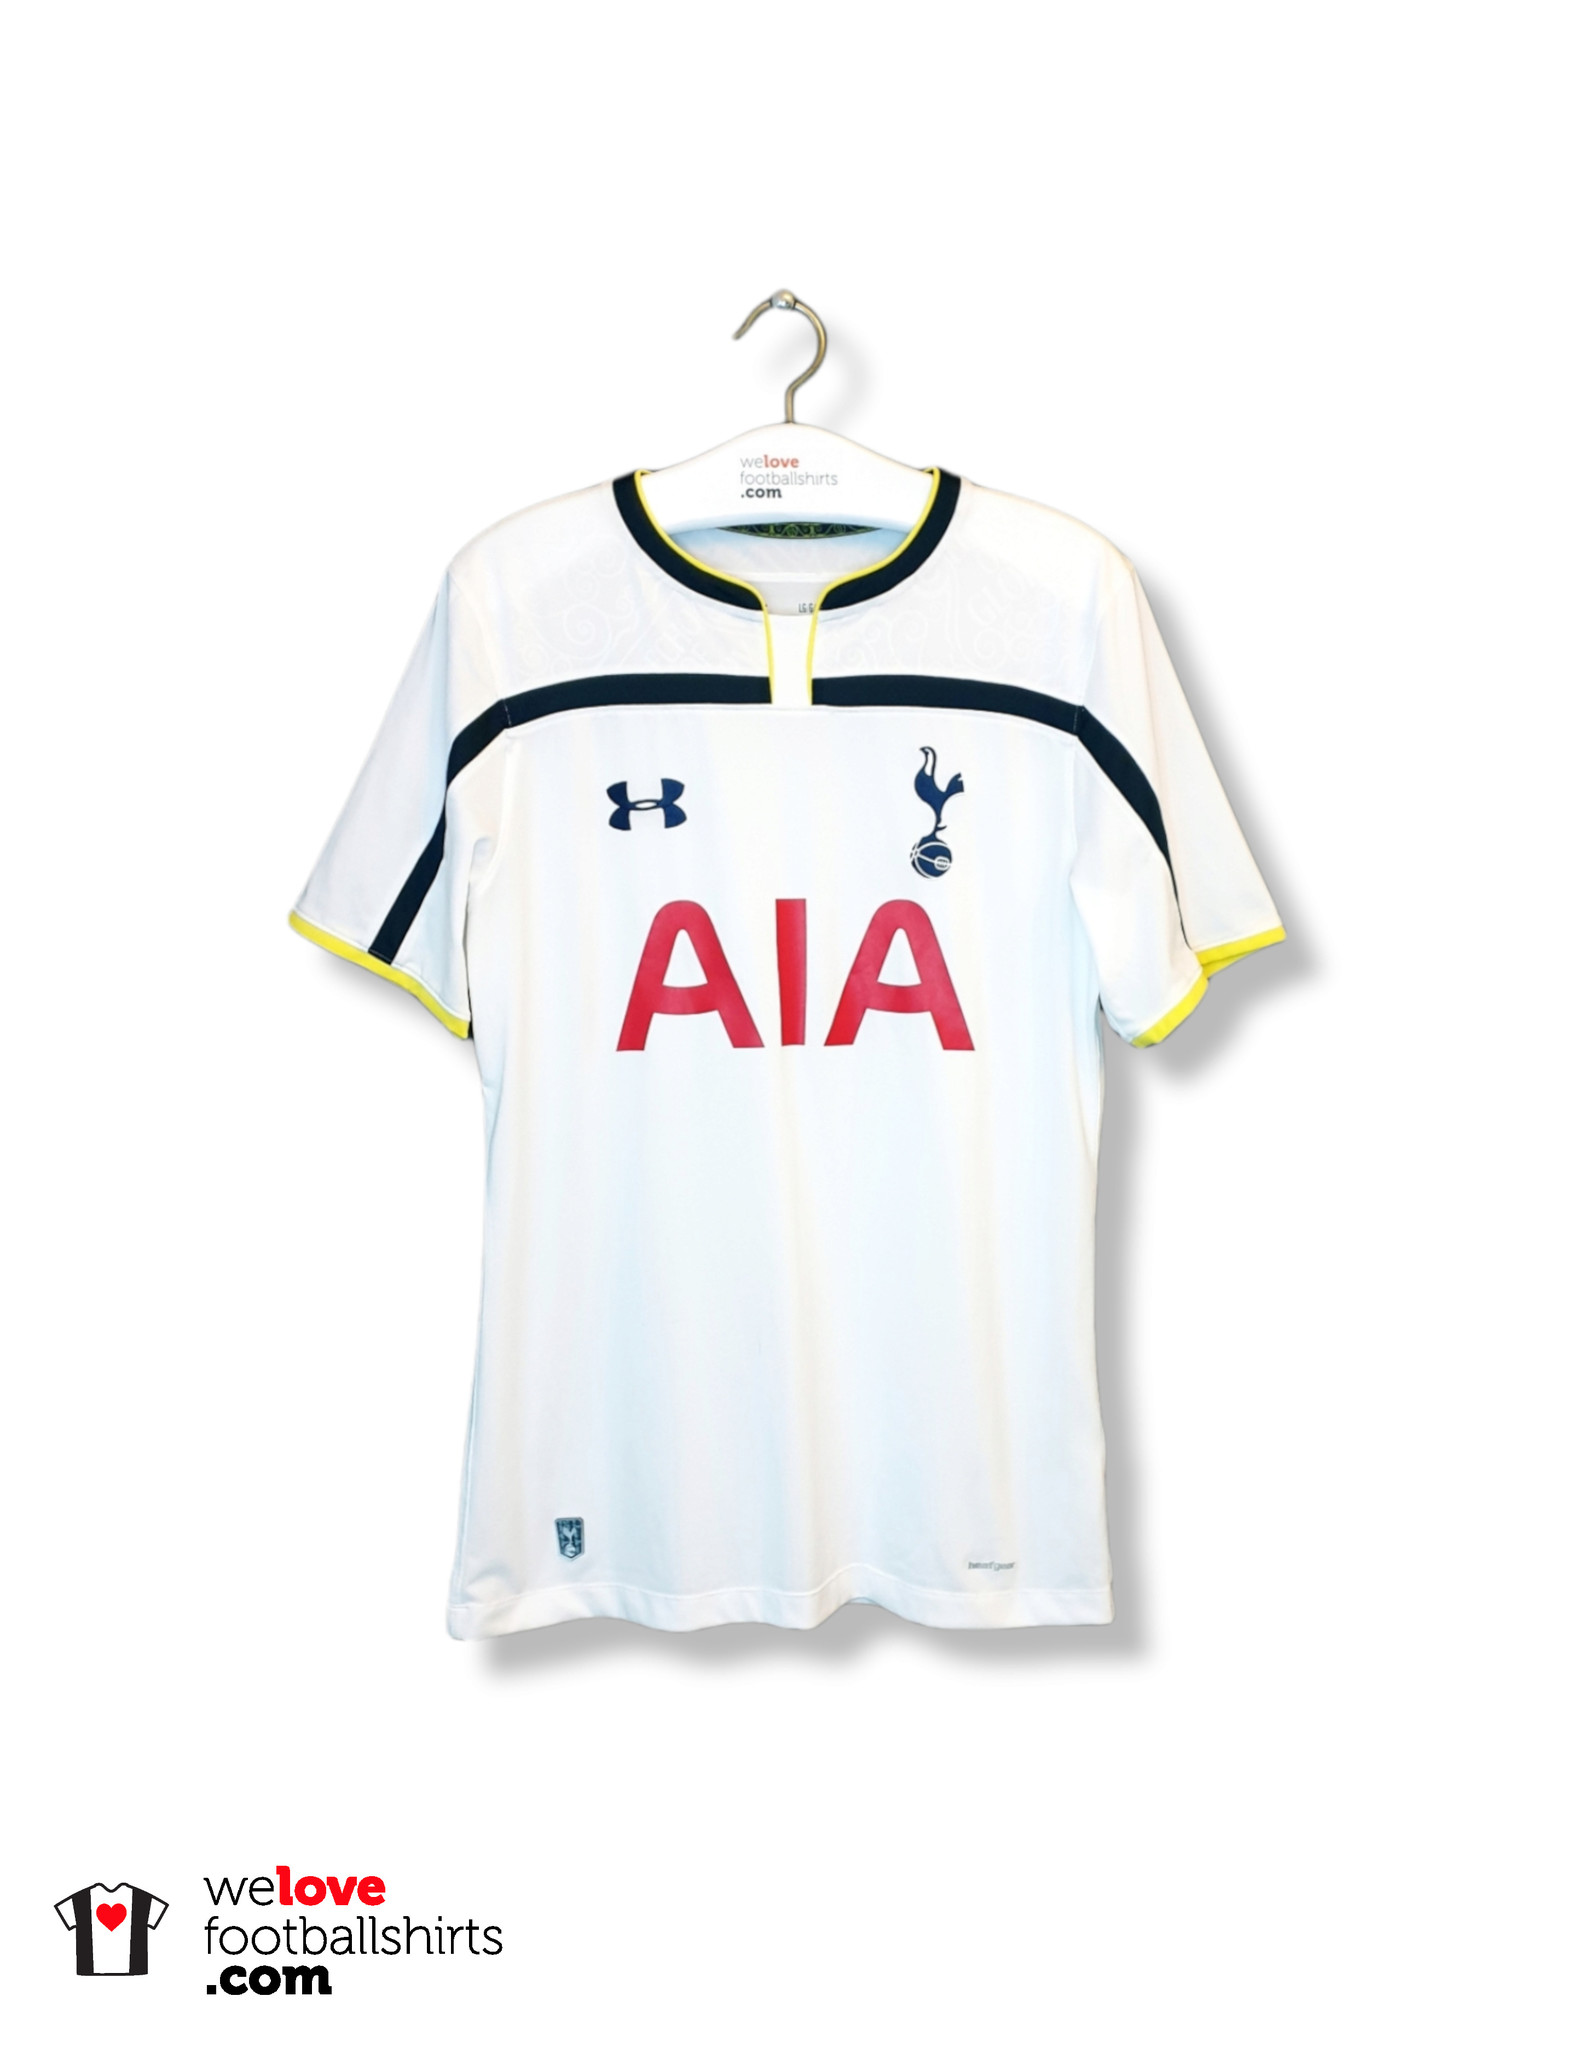 Met andere woorden Langskomen identificatie Under Armour football home shirt Tottenham Hotspur 2014/15 -  Welovefootballshirts.com